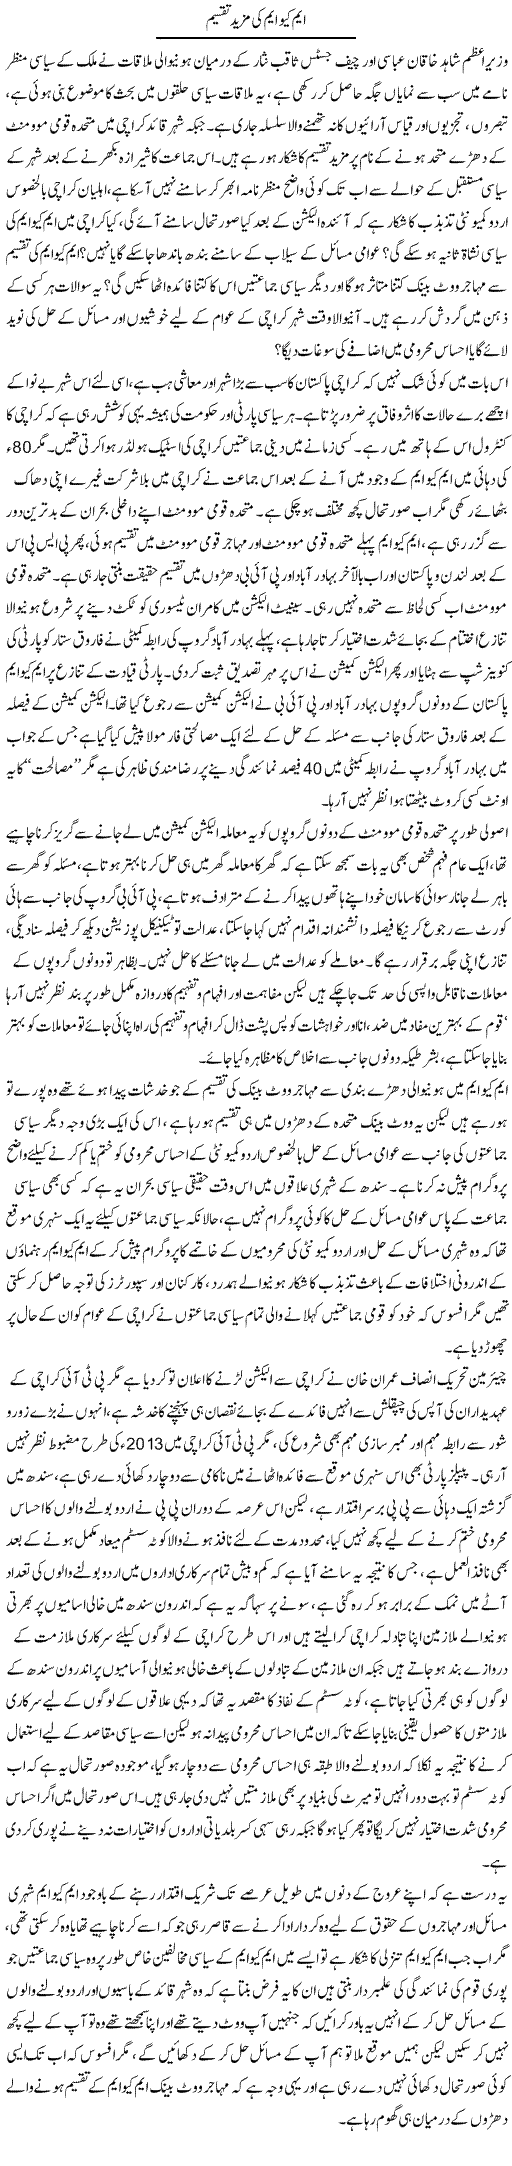 MQM Ki Mazeed Taqseem | Tahir Najmi | Daily Urdu Columns